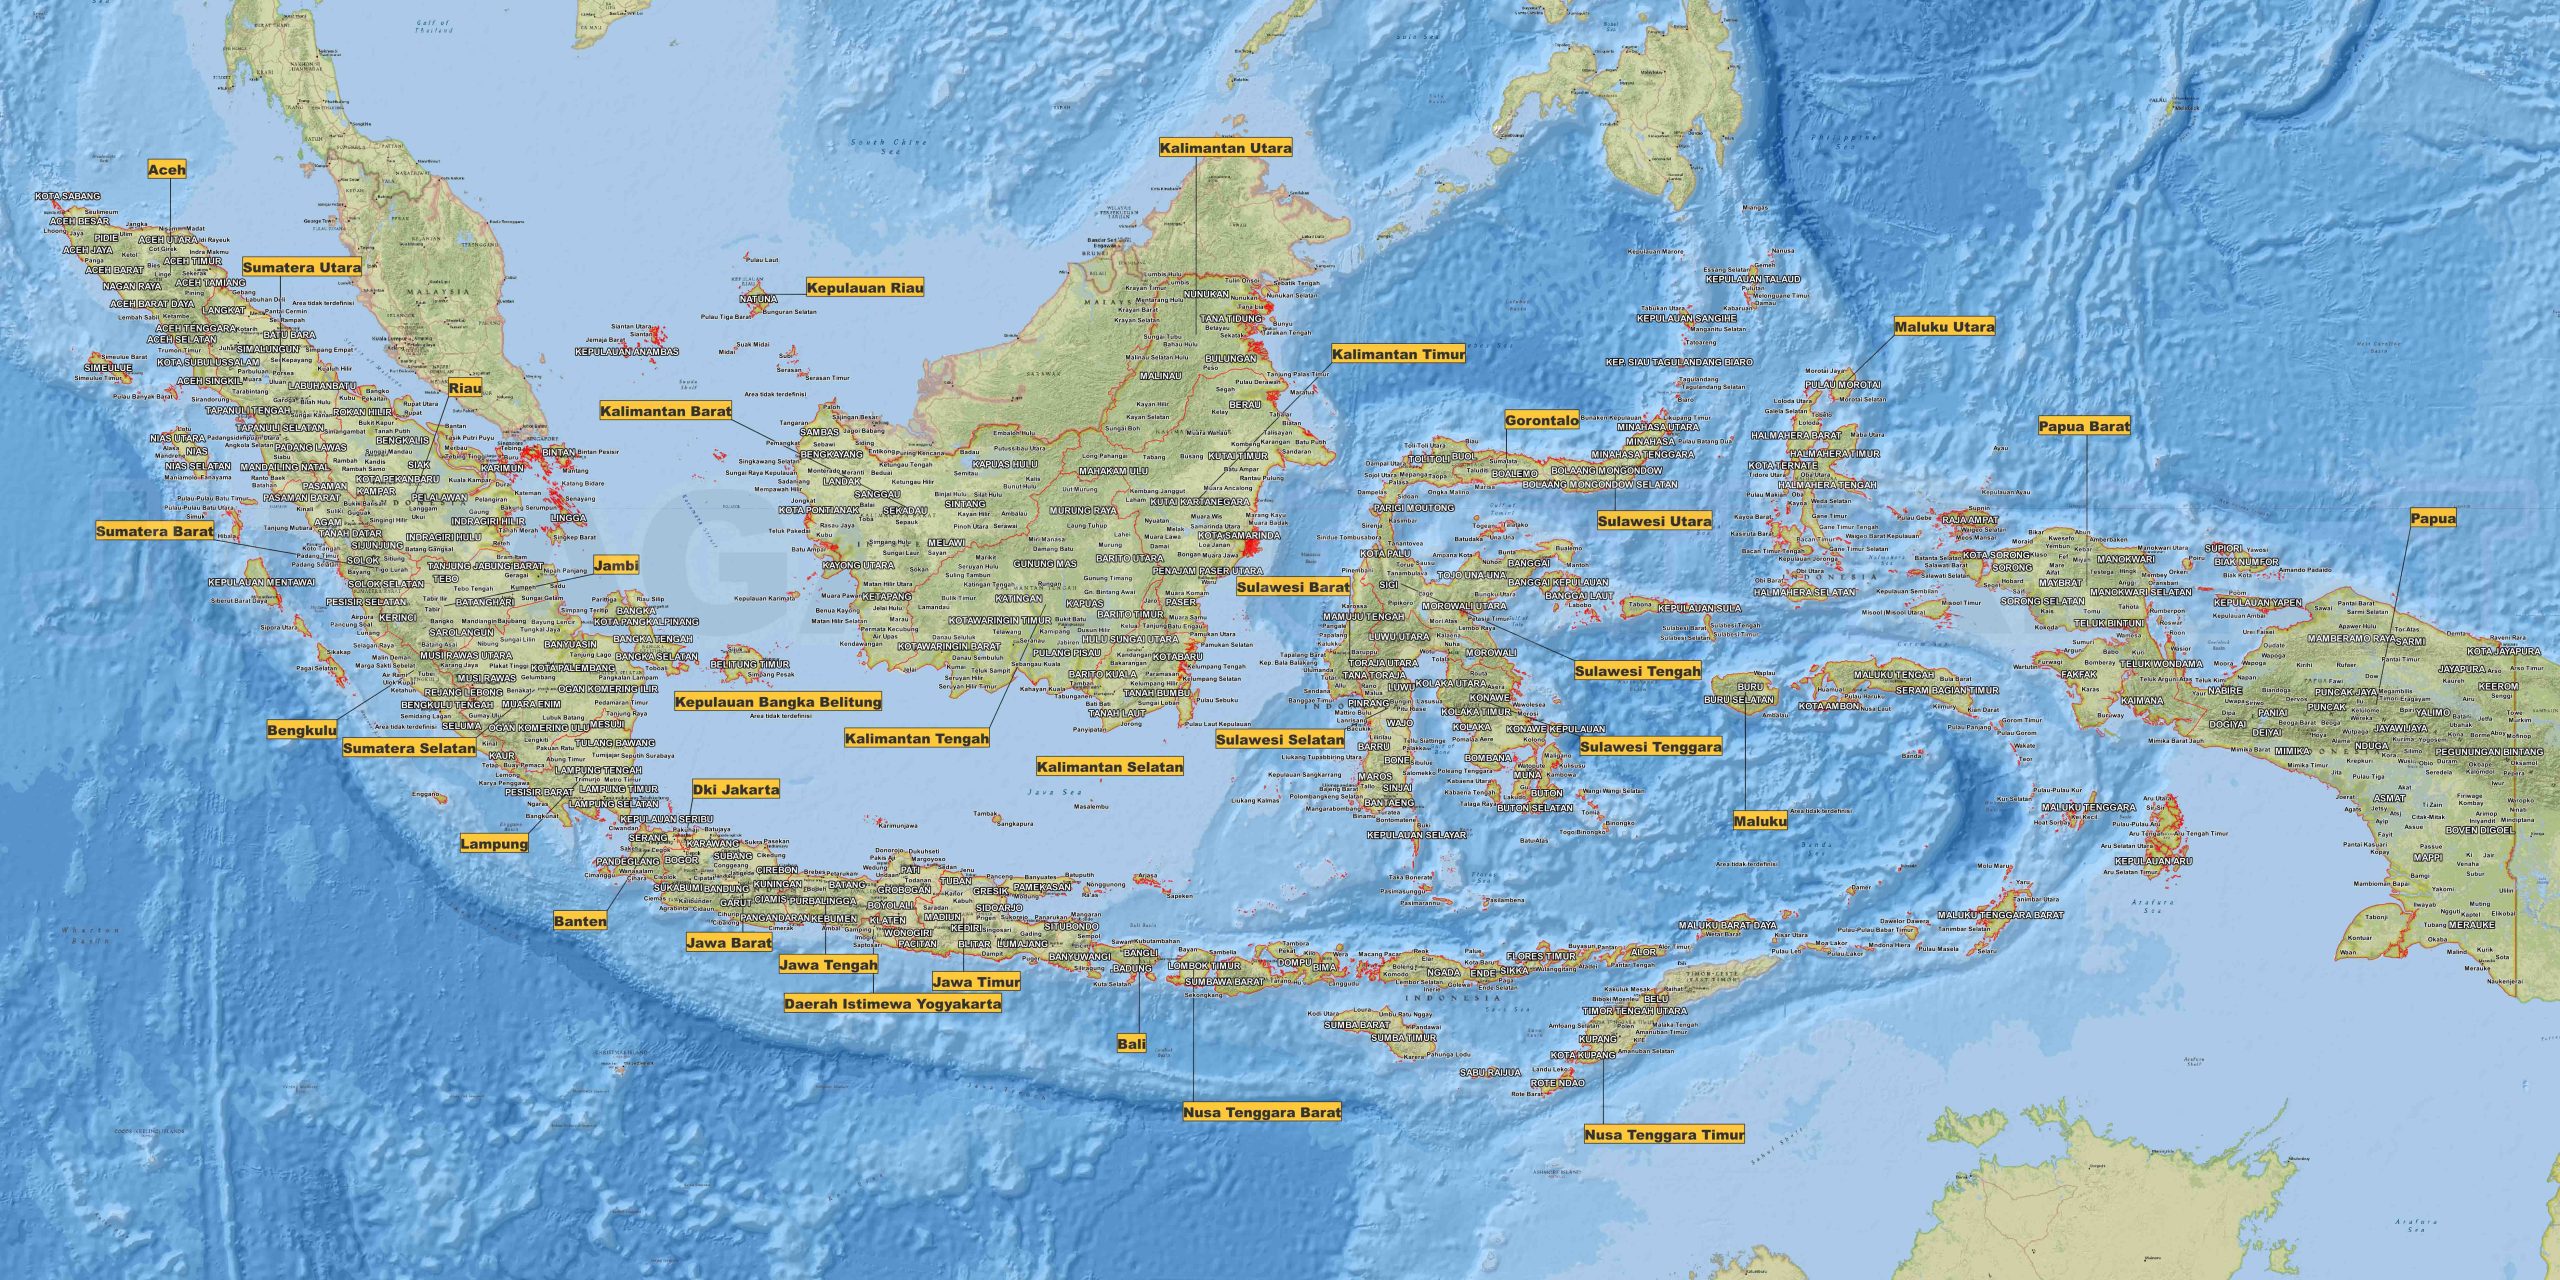 Potensi Ikan Perairan Indonesia dalam Peta: Sumber Kekayaan Laut